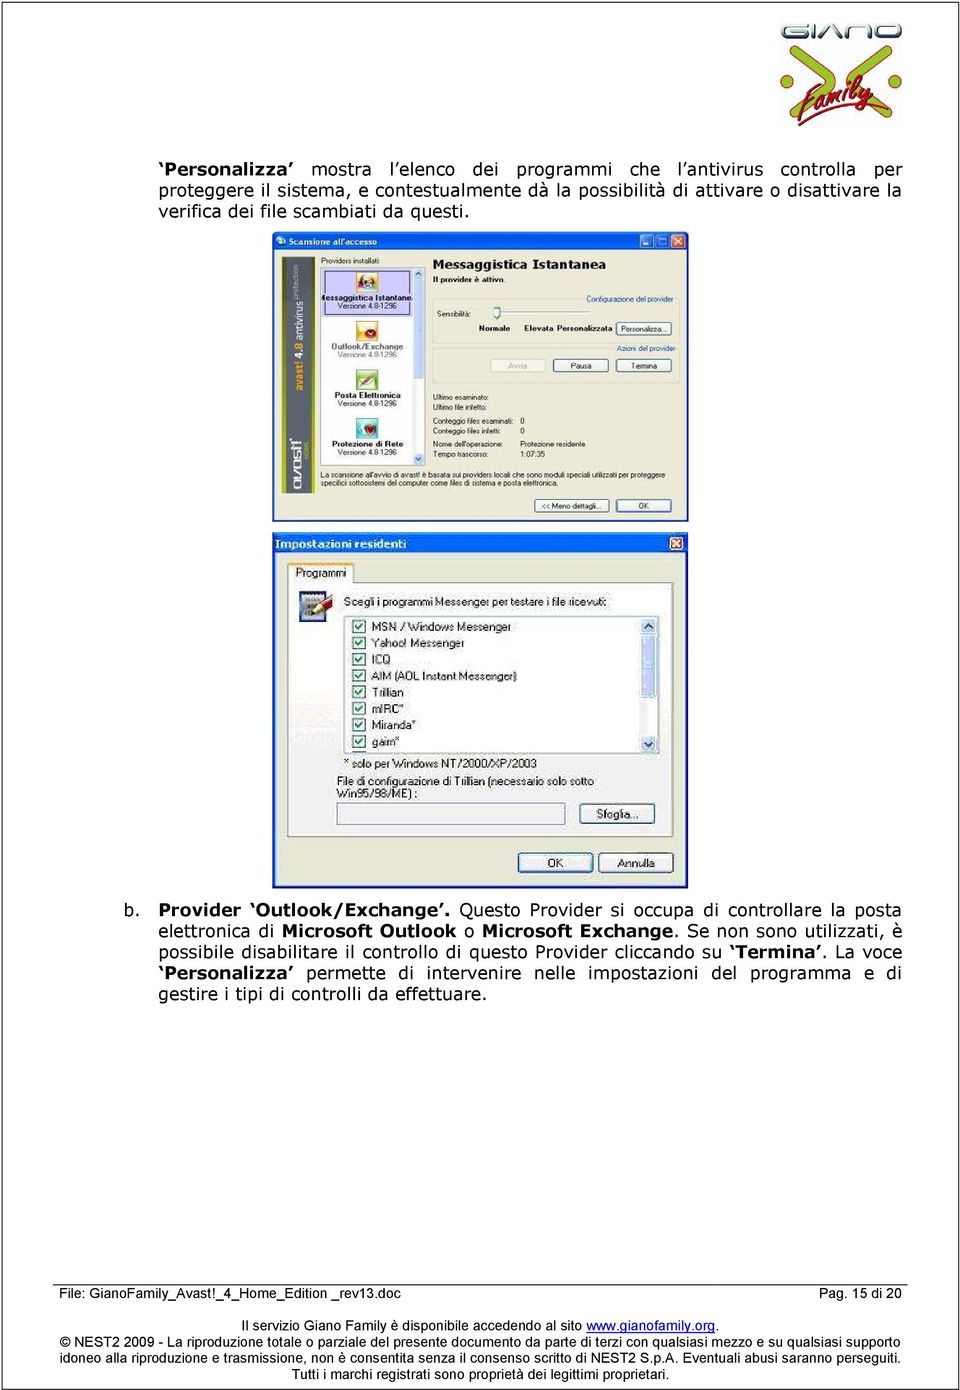 Questo Provider si occupa di controllare la posta elettronica di Microsoft Outlook o Microsoft Exchange.